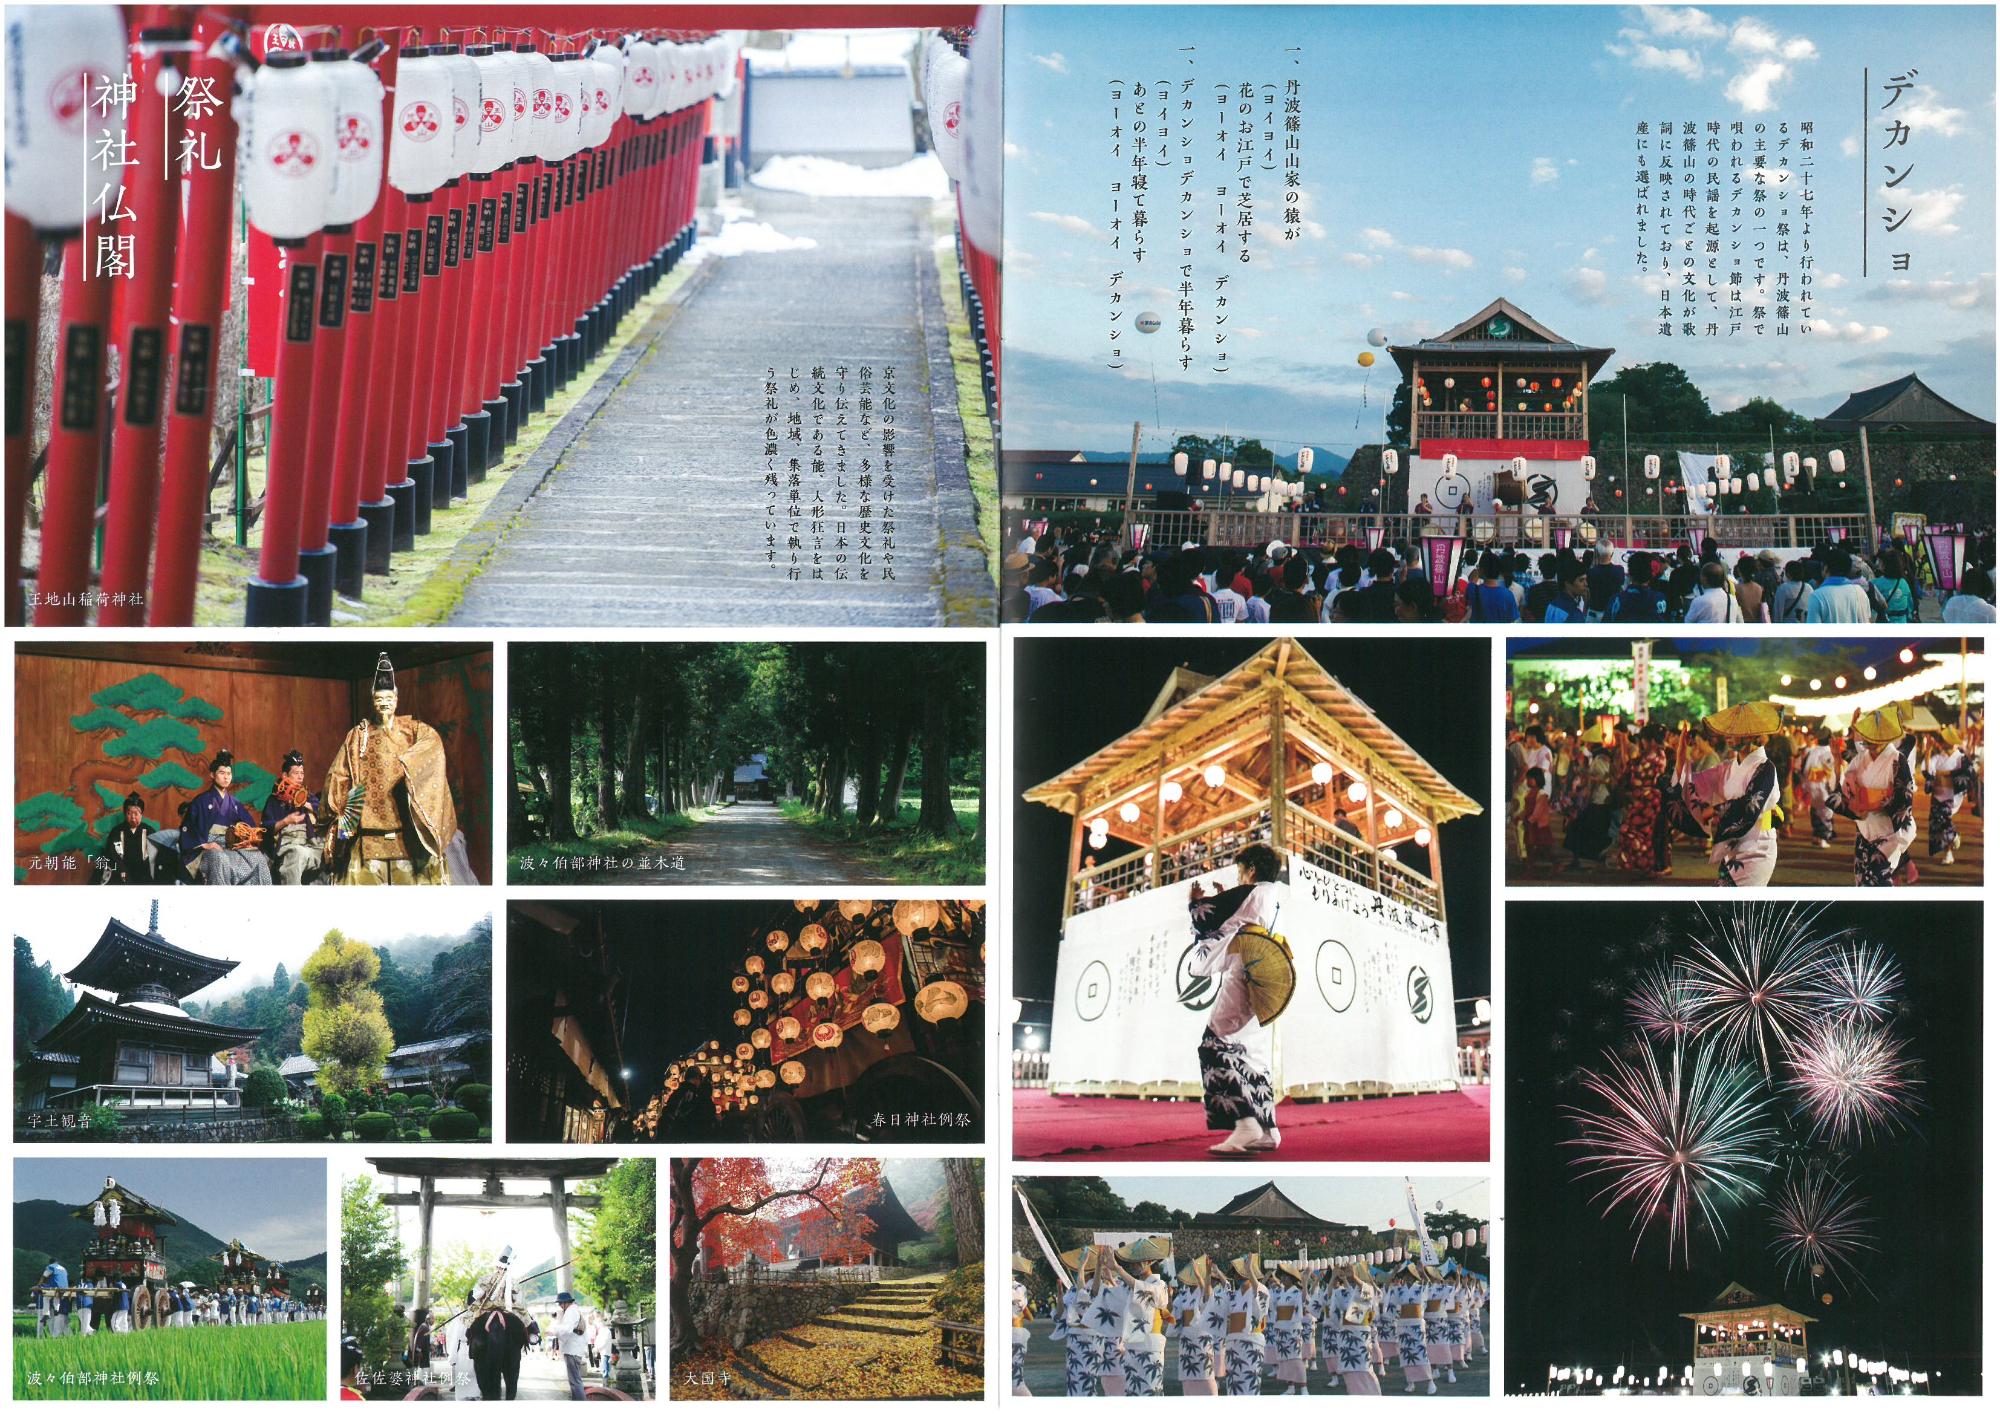 見開きで丹波篠山市の神社仏閣、祭礼の写真が掲載されている。デカンショ祭り、能舞台など。